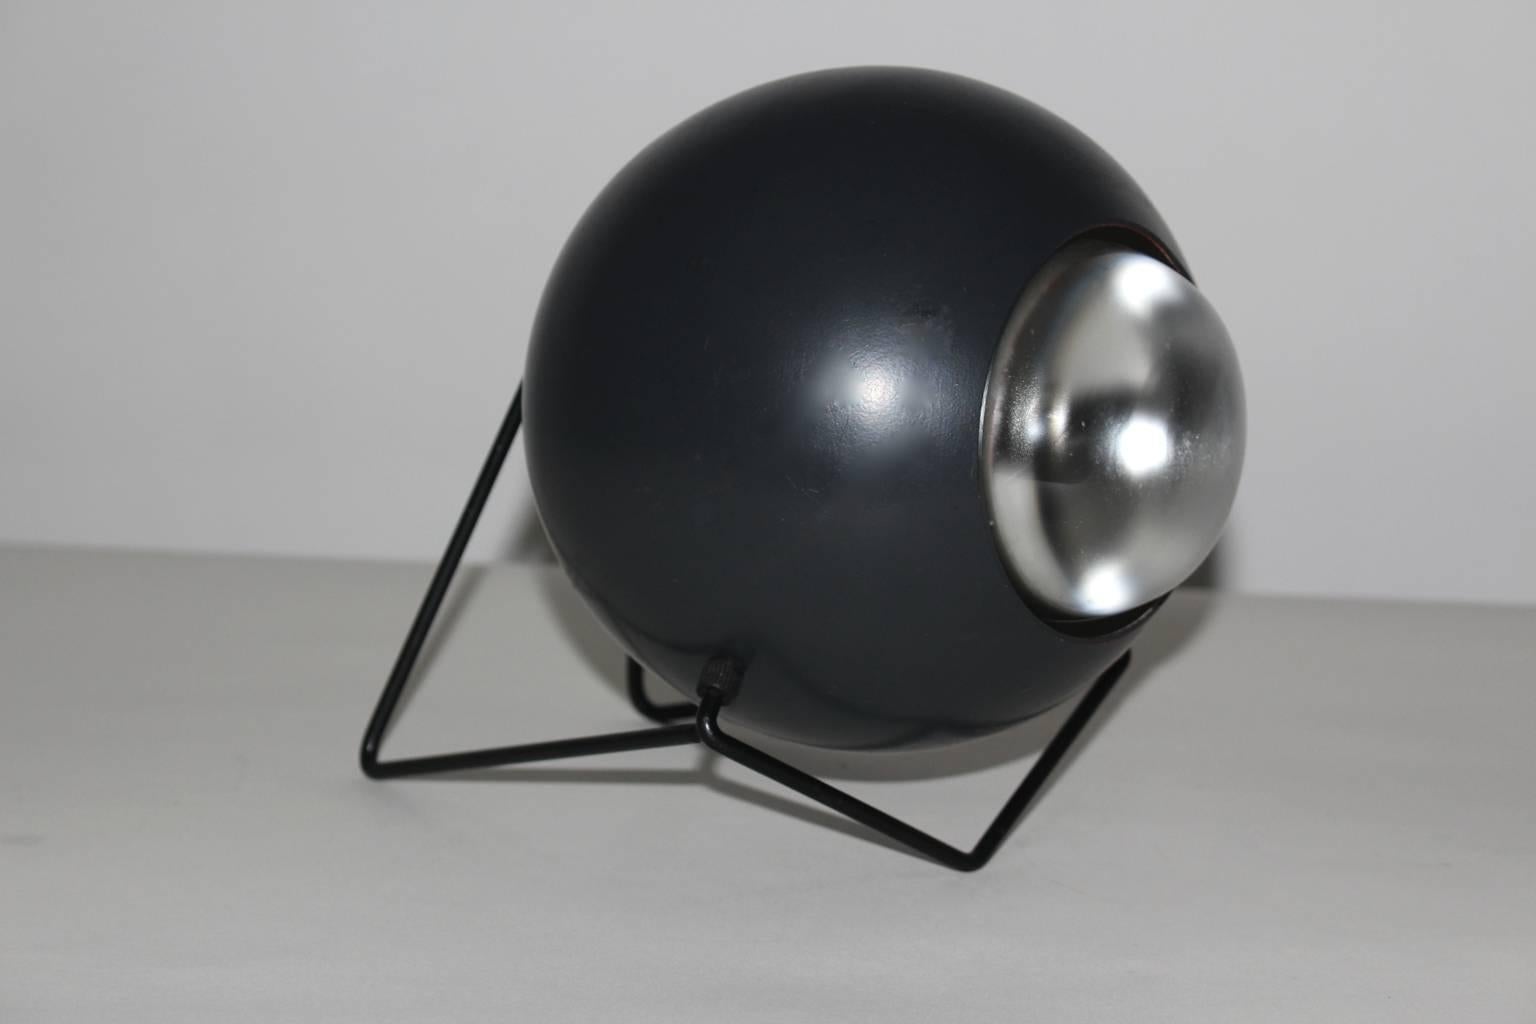 Mid century modern vintage black table lamp circular -  wie mit einem Haarnadel-Metalldrahtsockel von Harry Gitlin für Stamford Lighting 1950er Jahre USA.
Eine tolle Tischleuchte in einer neutralen Farbe schwarz mit einer verstellbaren Kugellampe